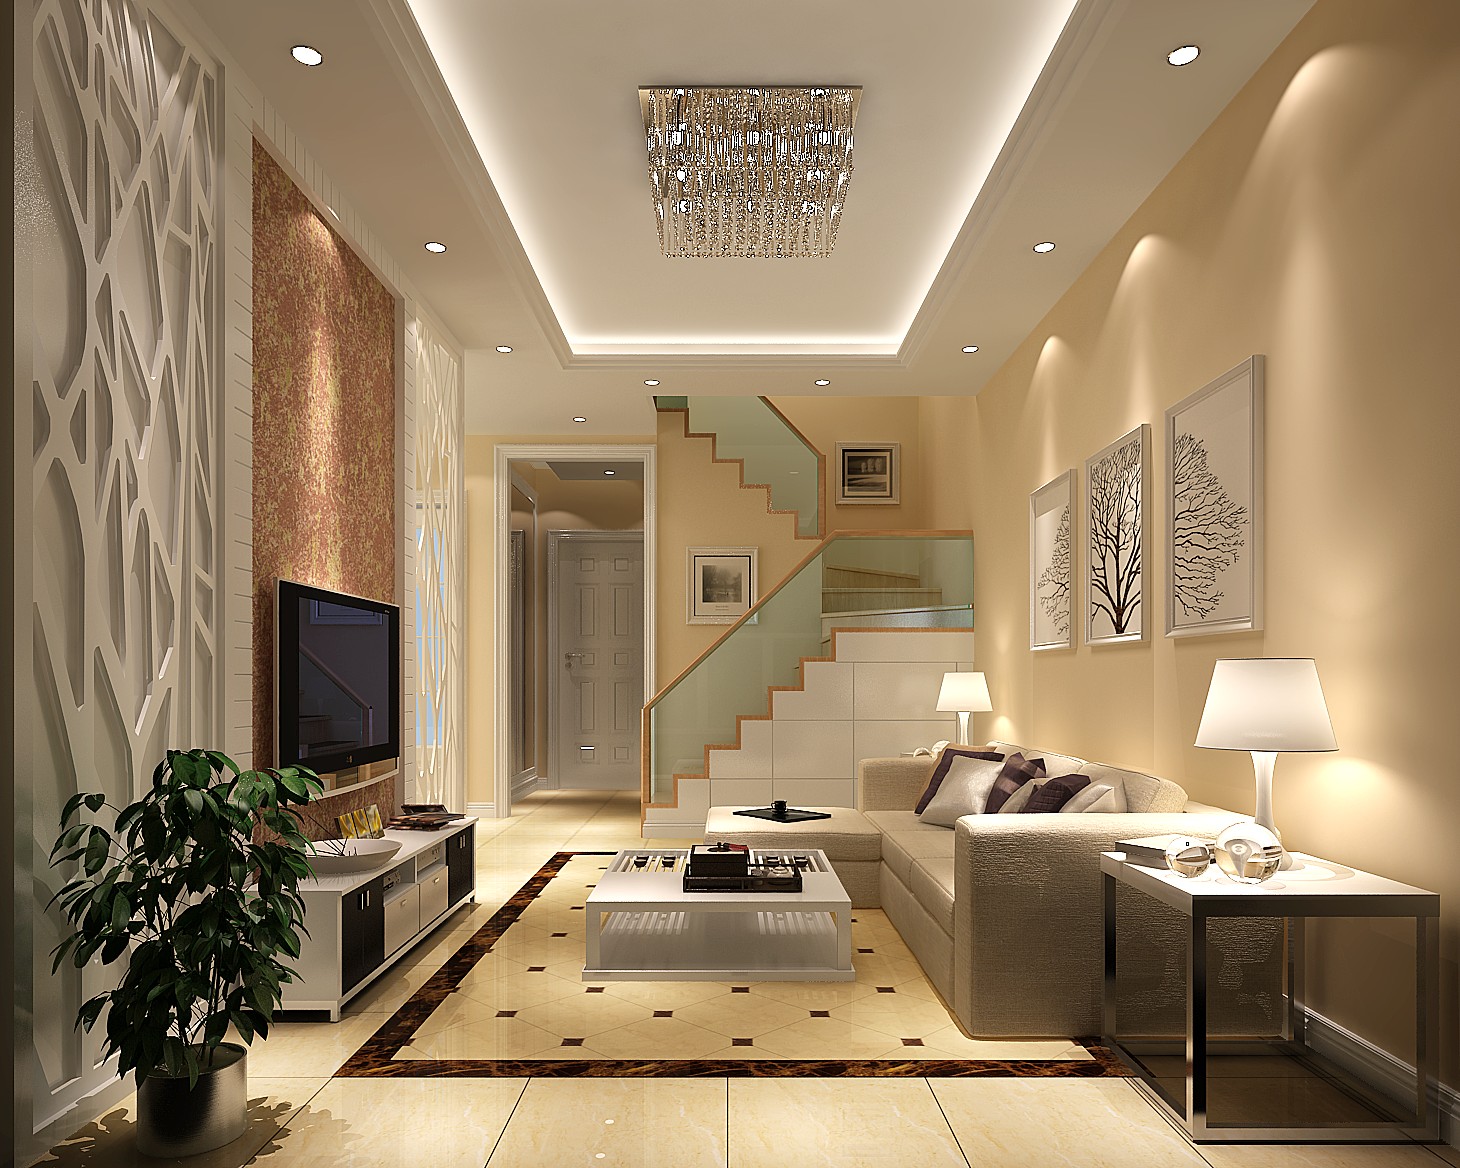 简约 公寓 美观 温馨 舒适 漂亮 客厅图片来自北京高度装饰设计王鹏程在k2百合湾壹号院简约风格装饰设计的分享